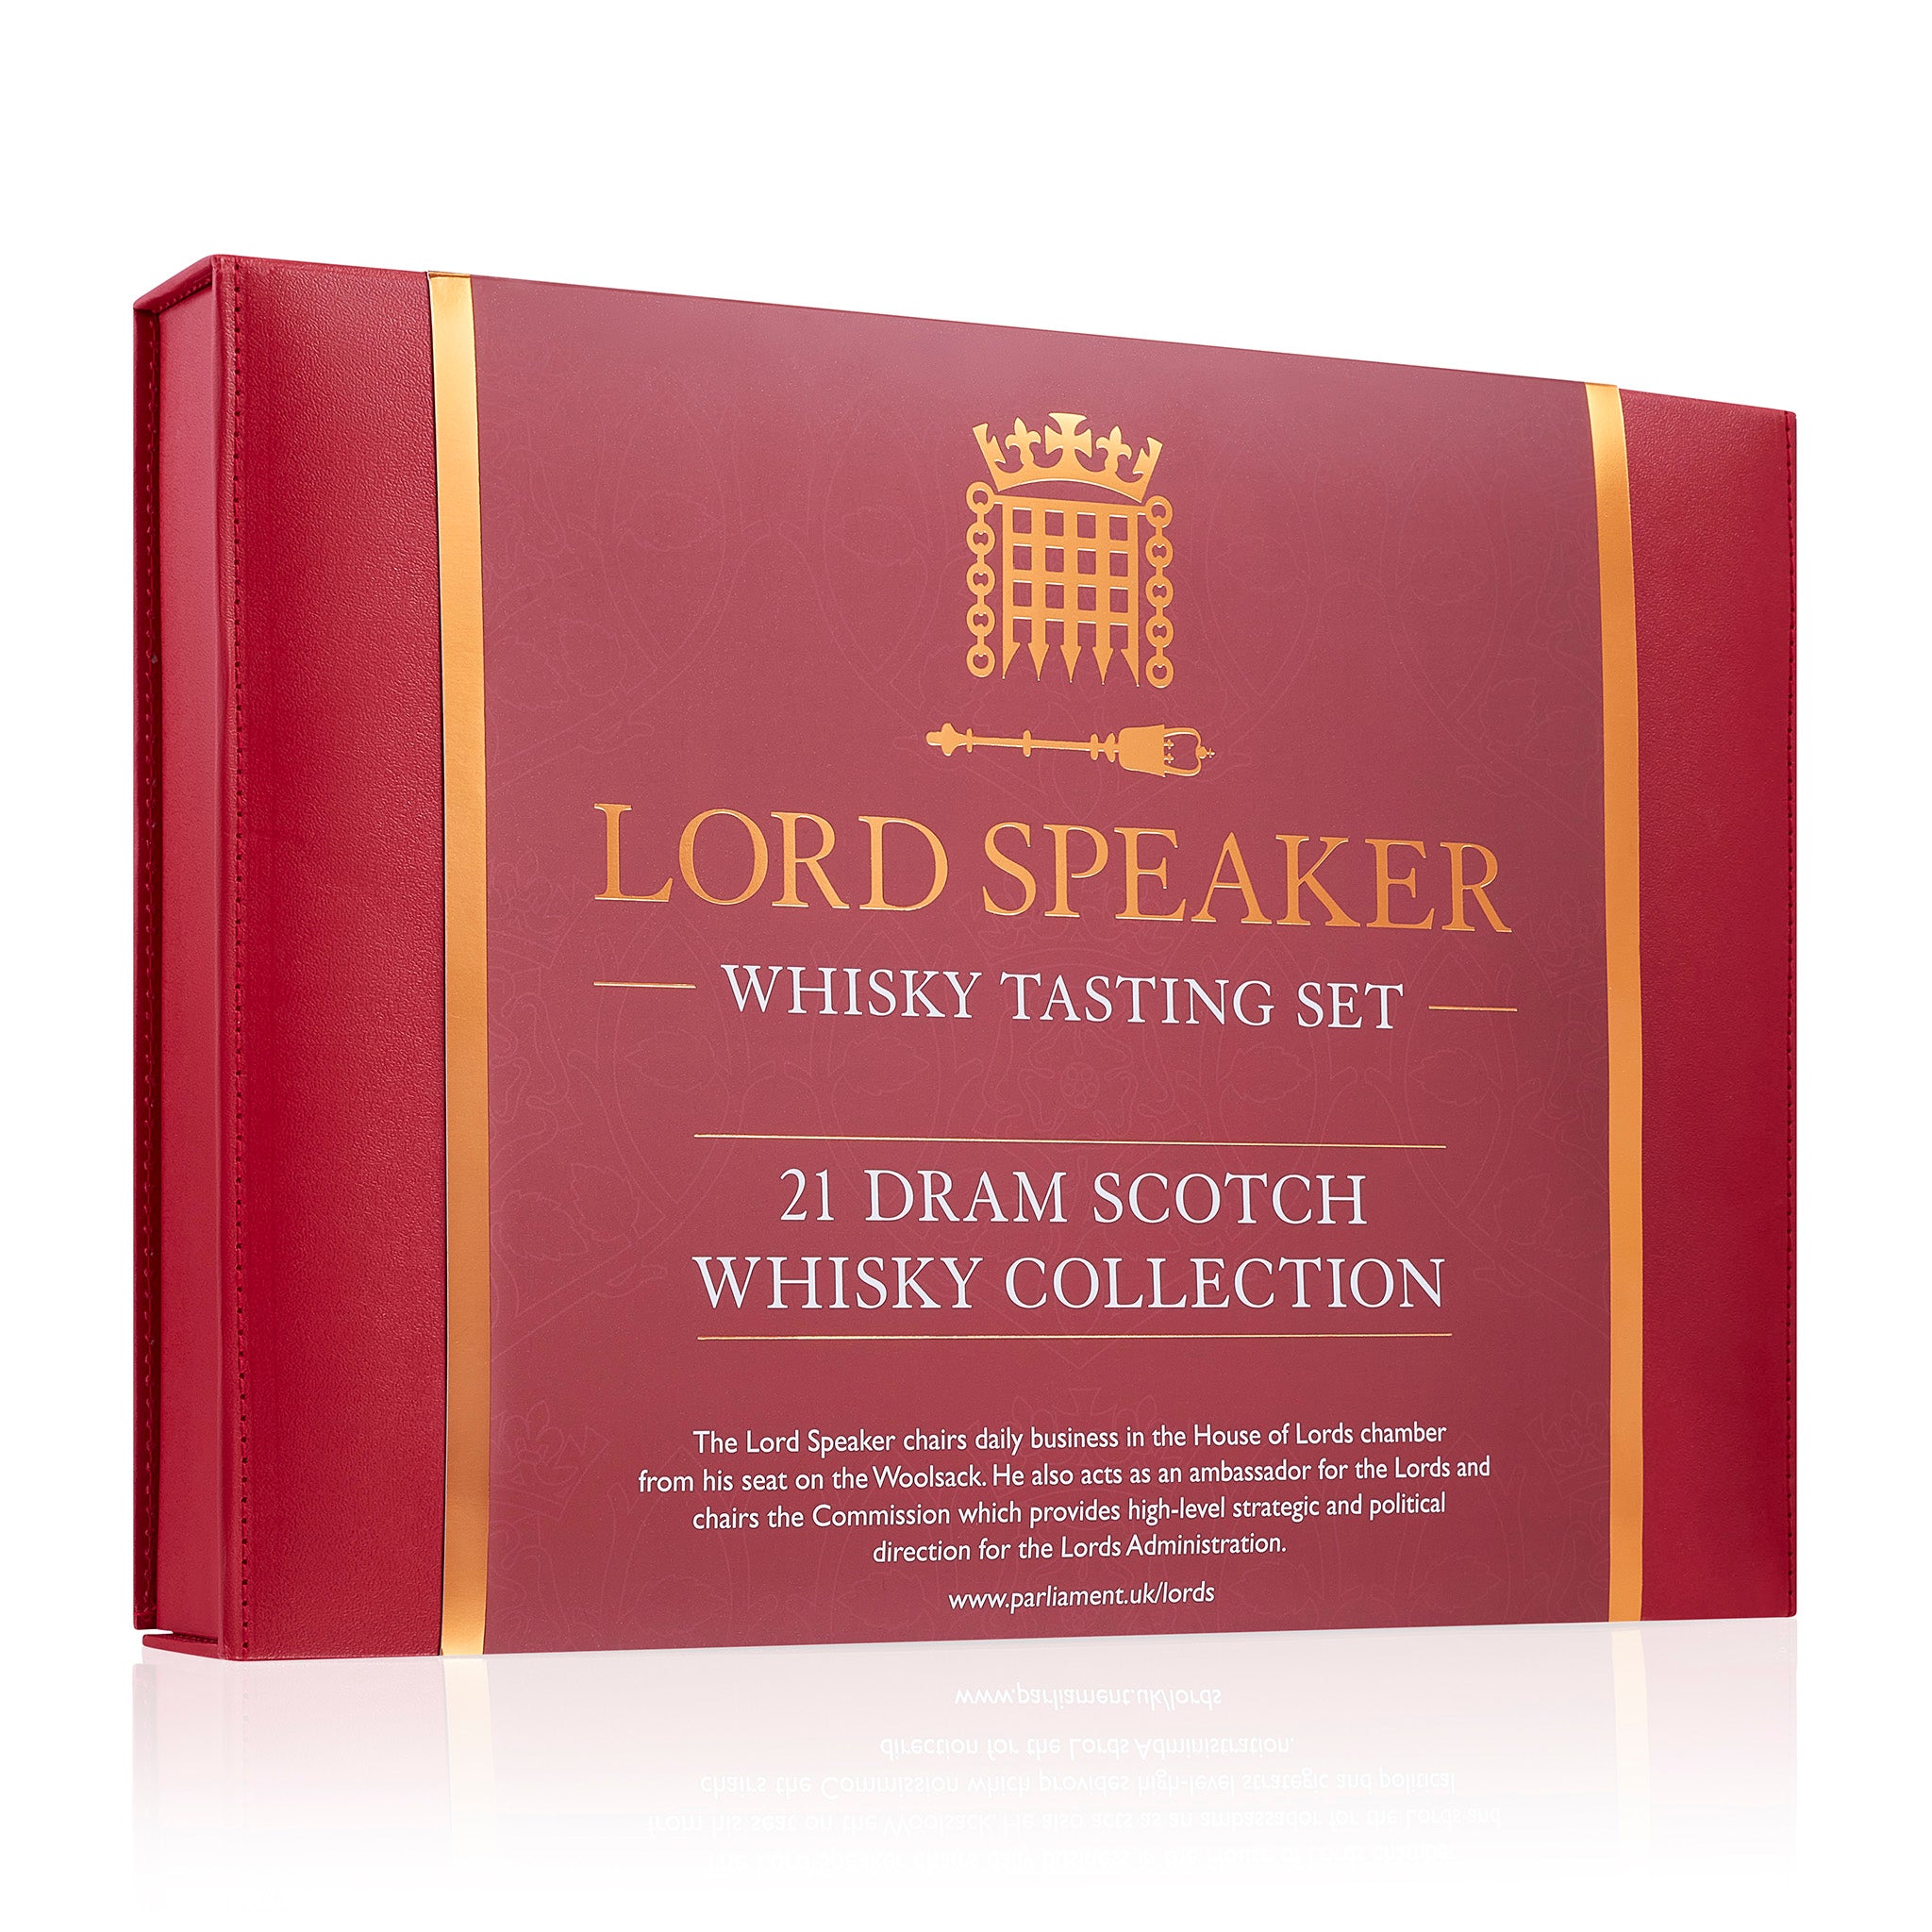 Lord Speaker's Whisky Tasting Set